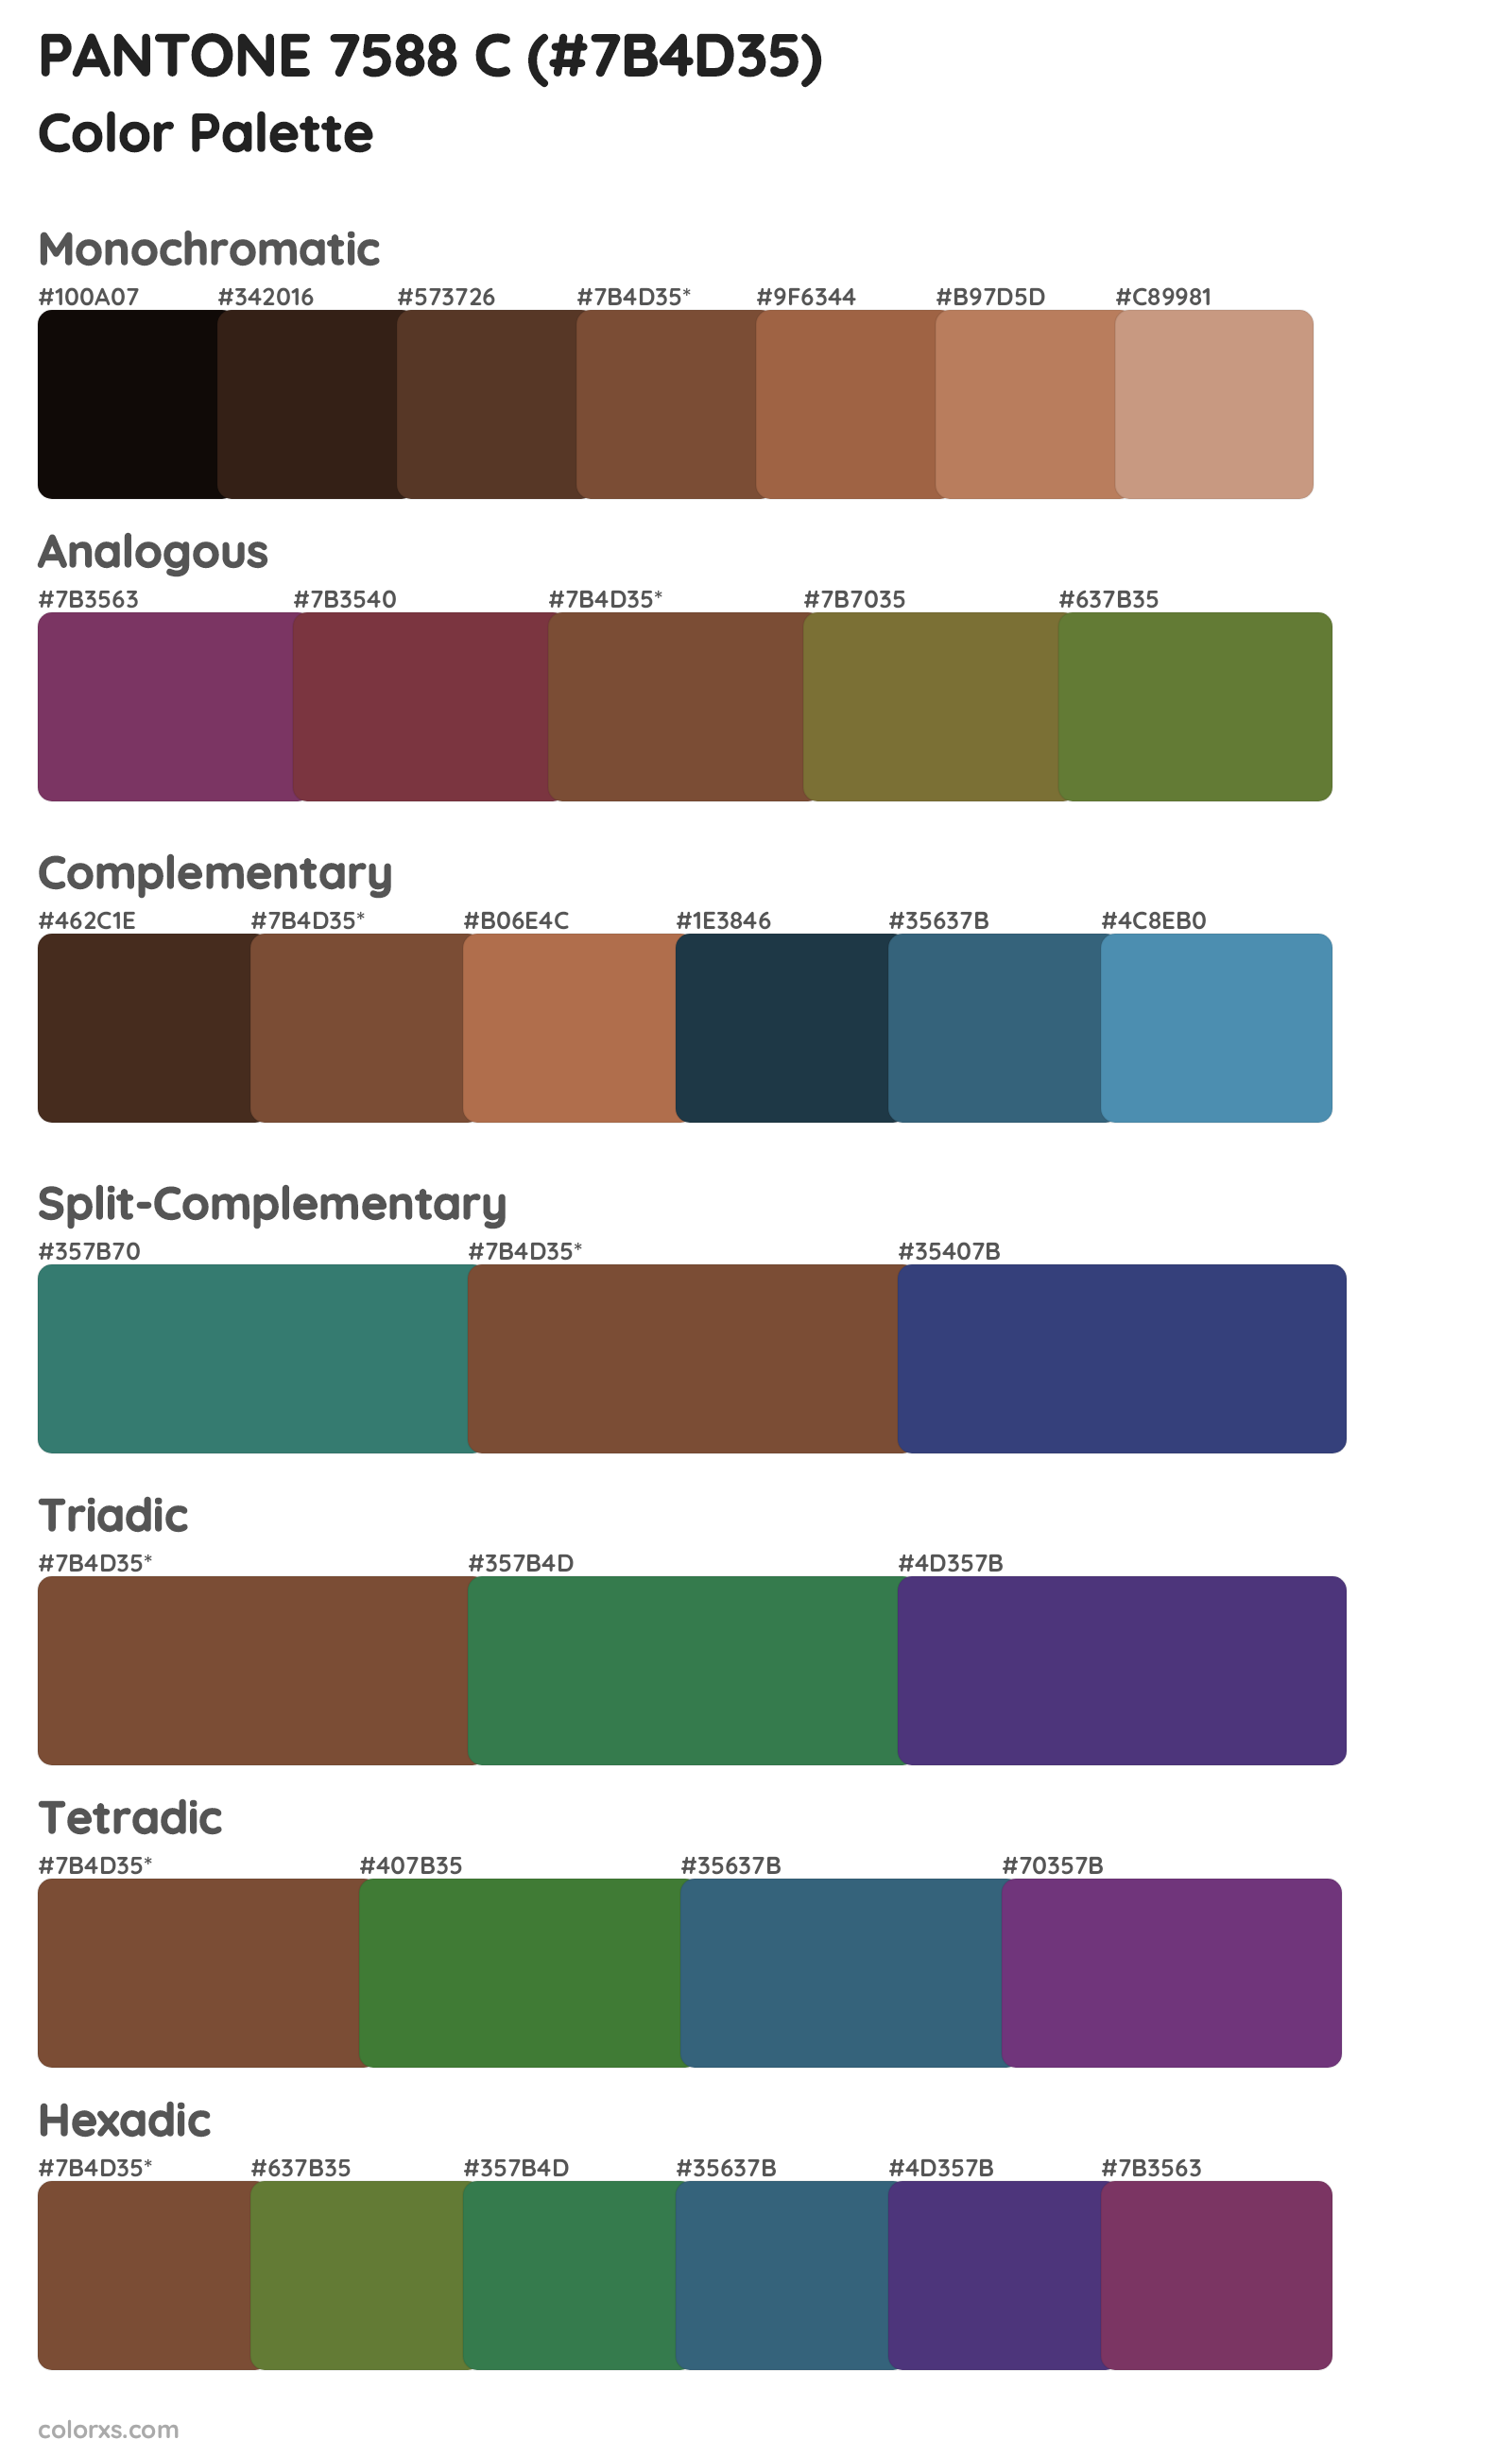 PANTONE 7588 C Color Scheme Palettes